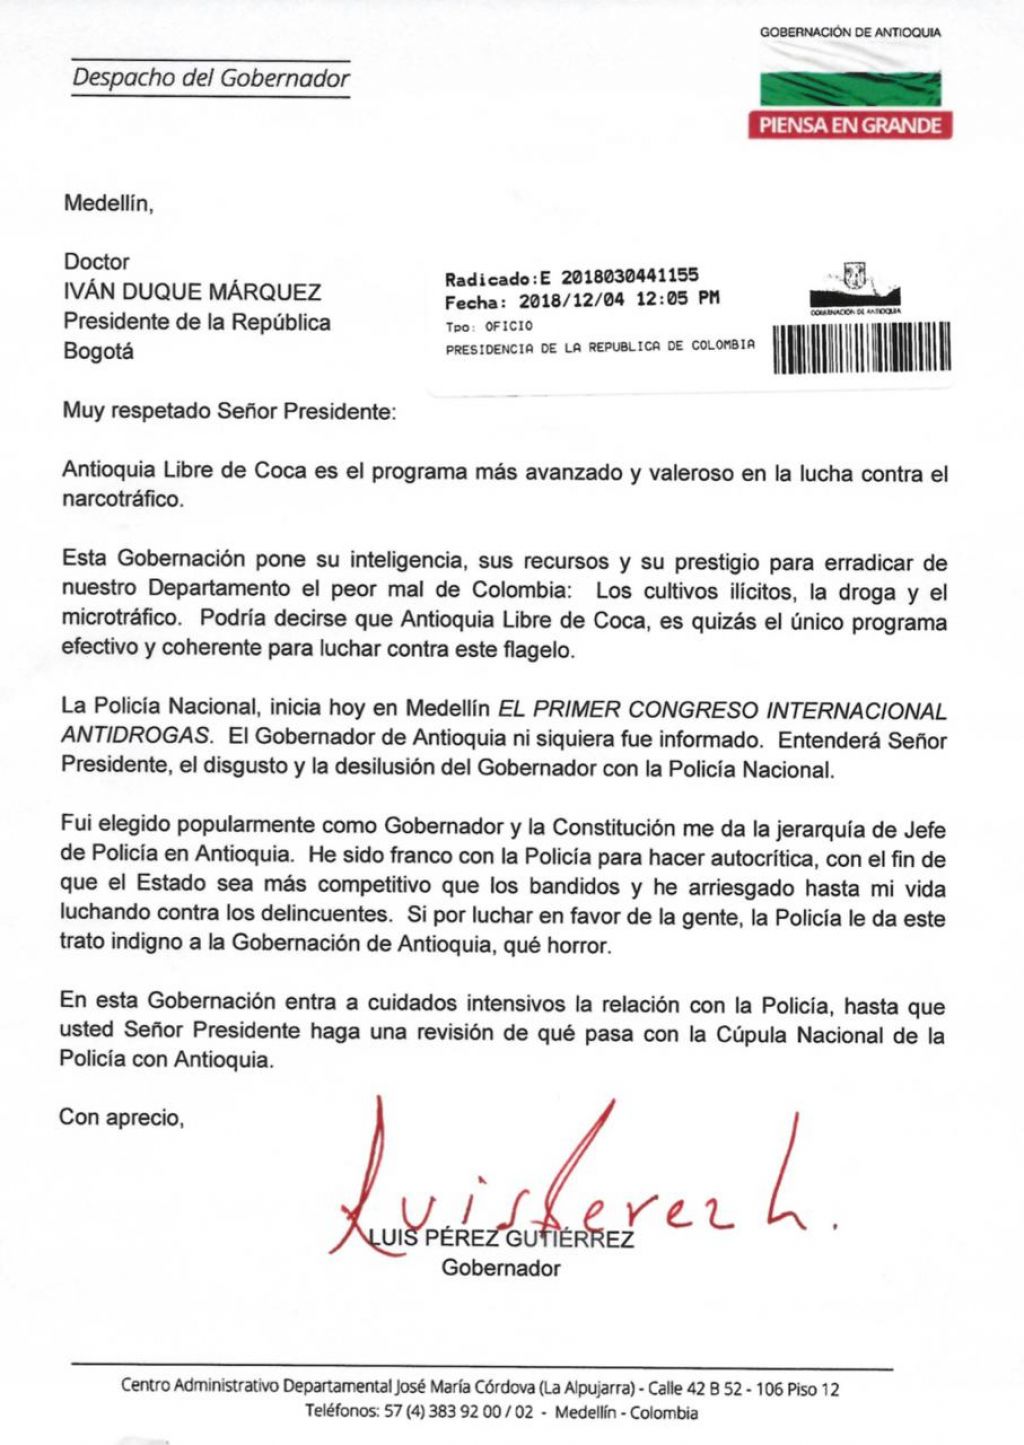 Carta del Gobernador de Antioquia al Presidente de la República